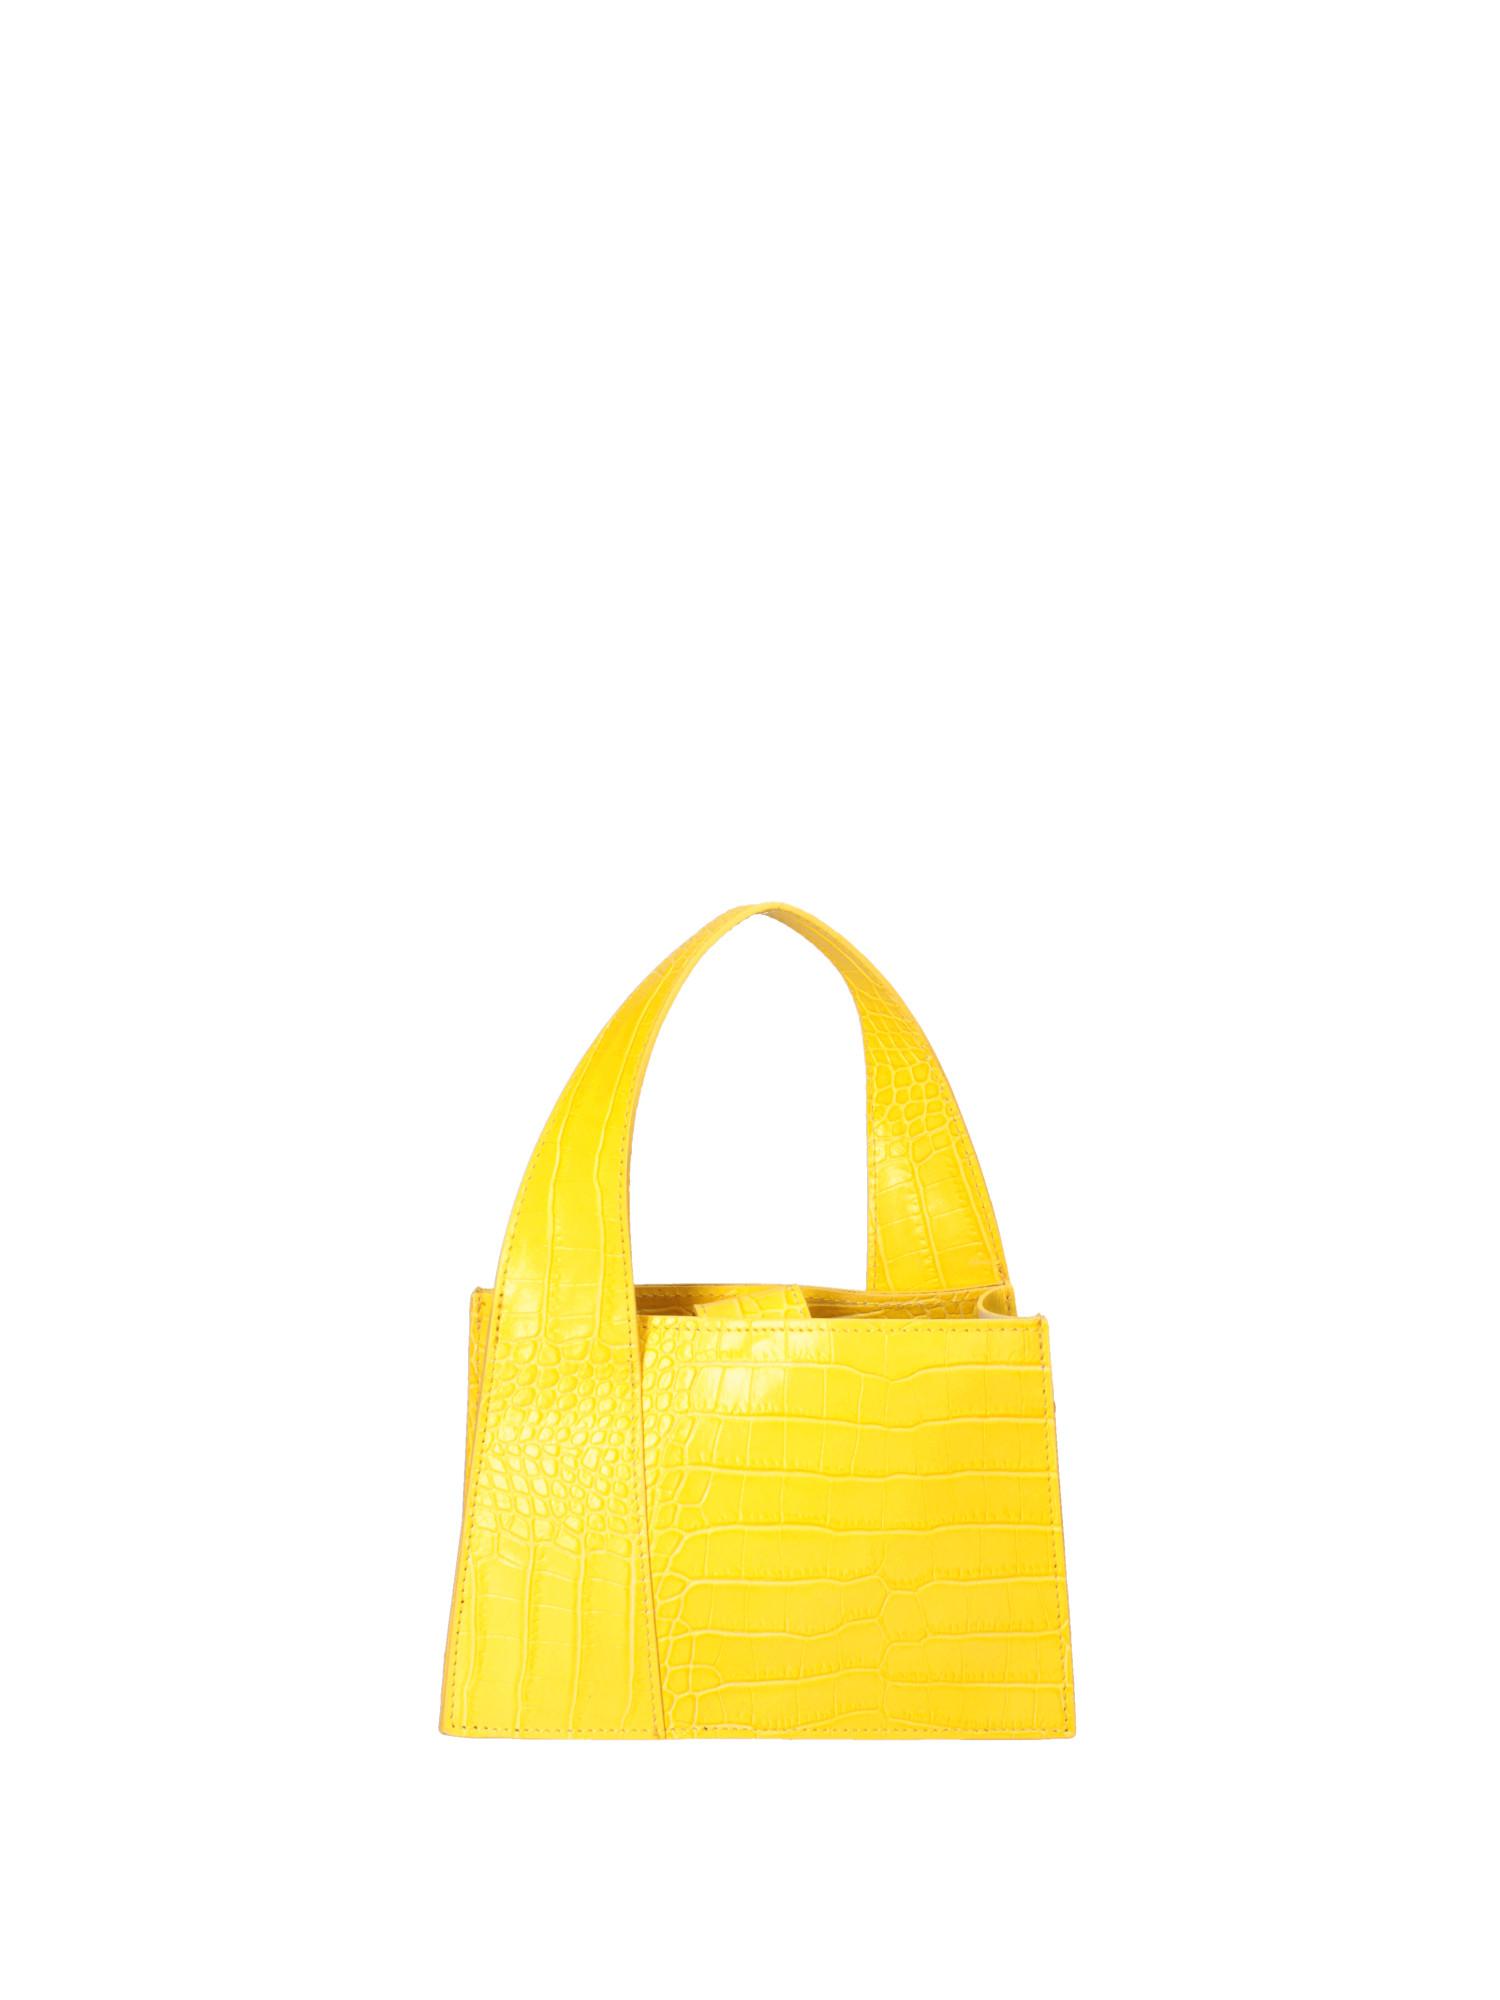 Handtasche Damen Gelb Bunt ONE SIZE von Roberta Rossi